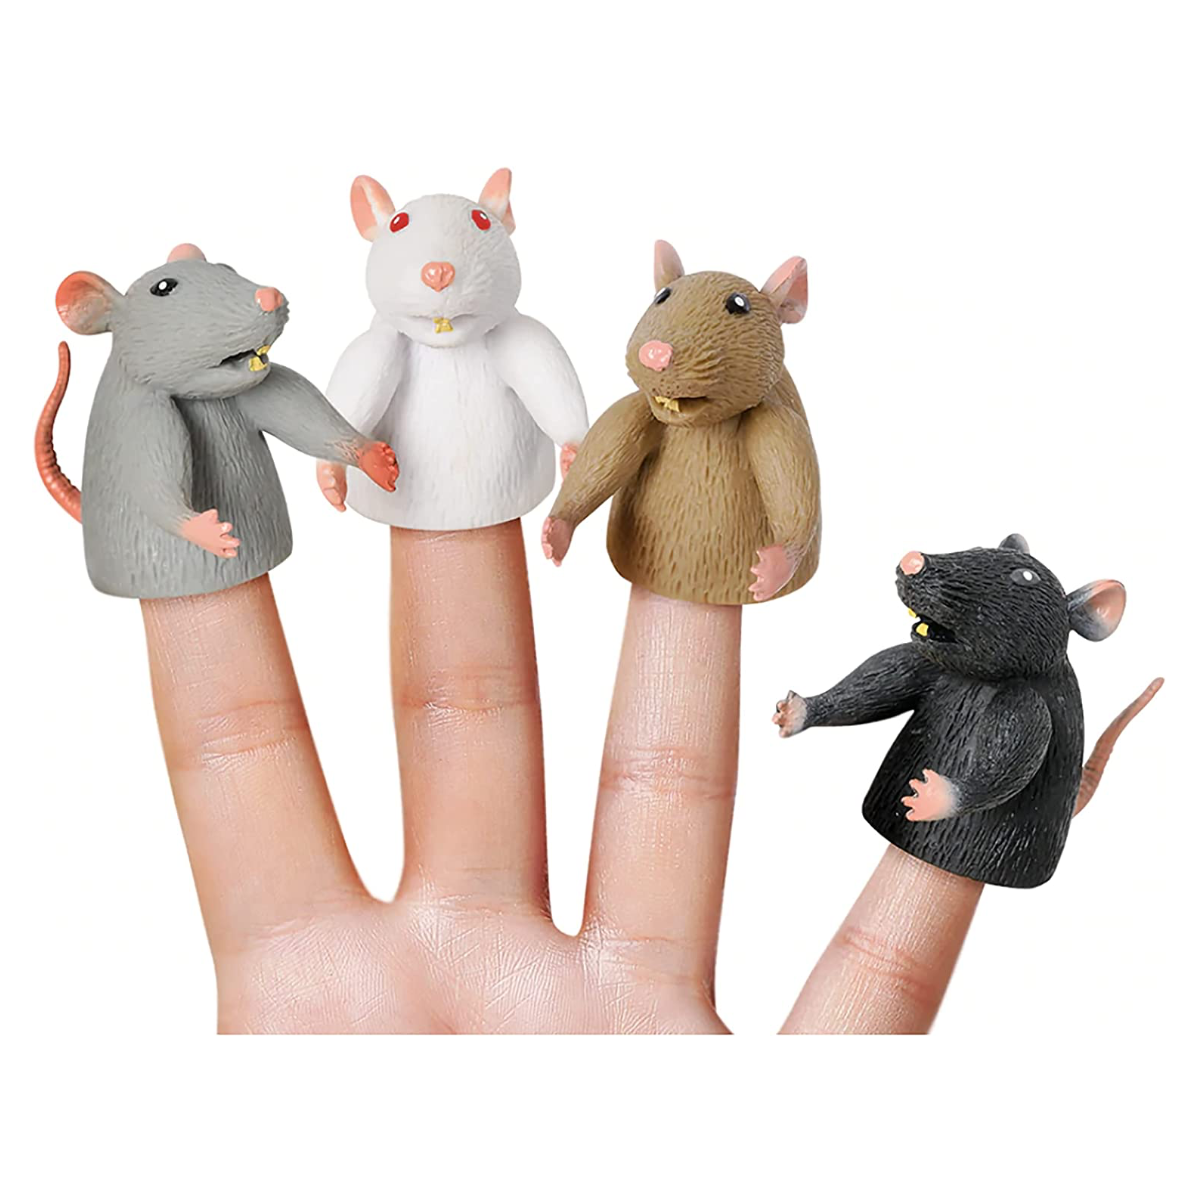 Finger Rats